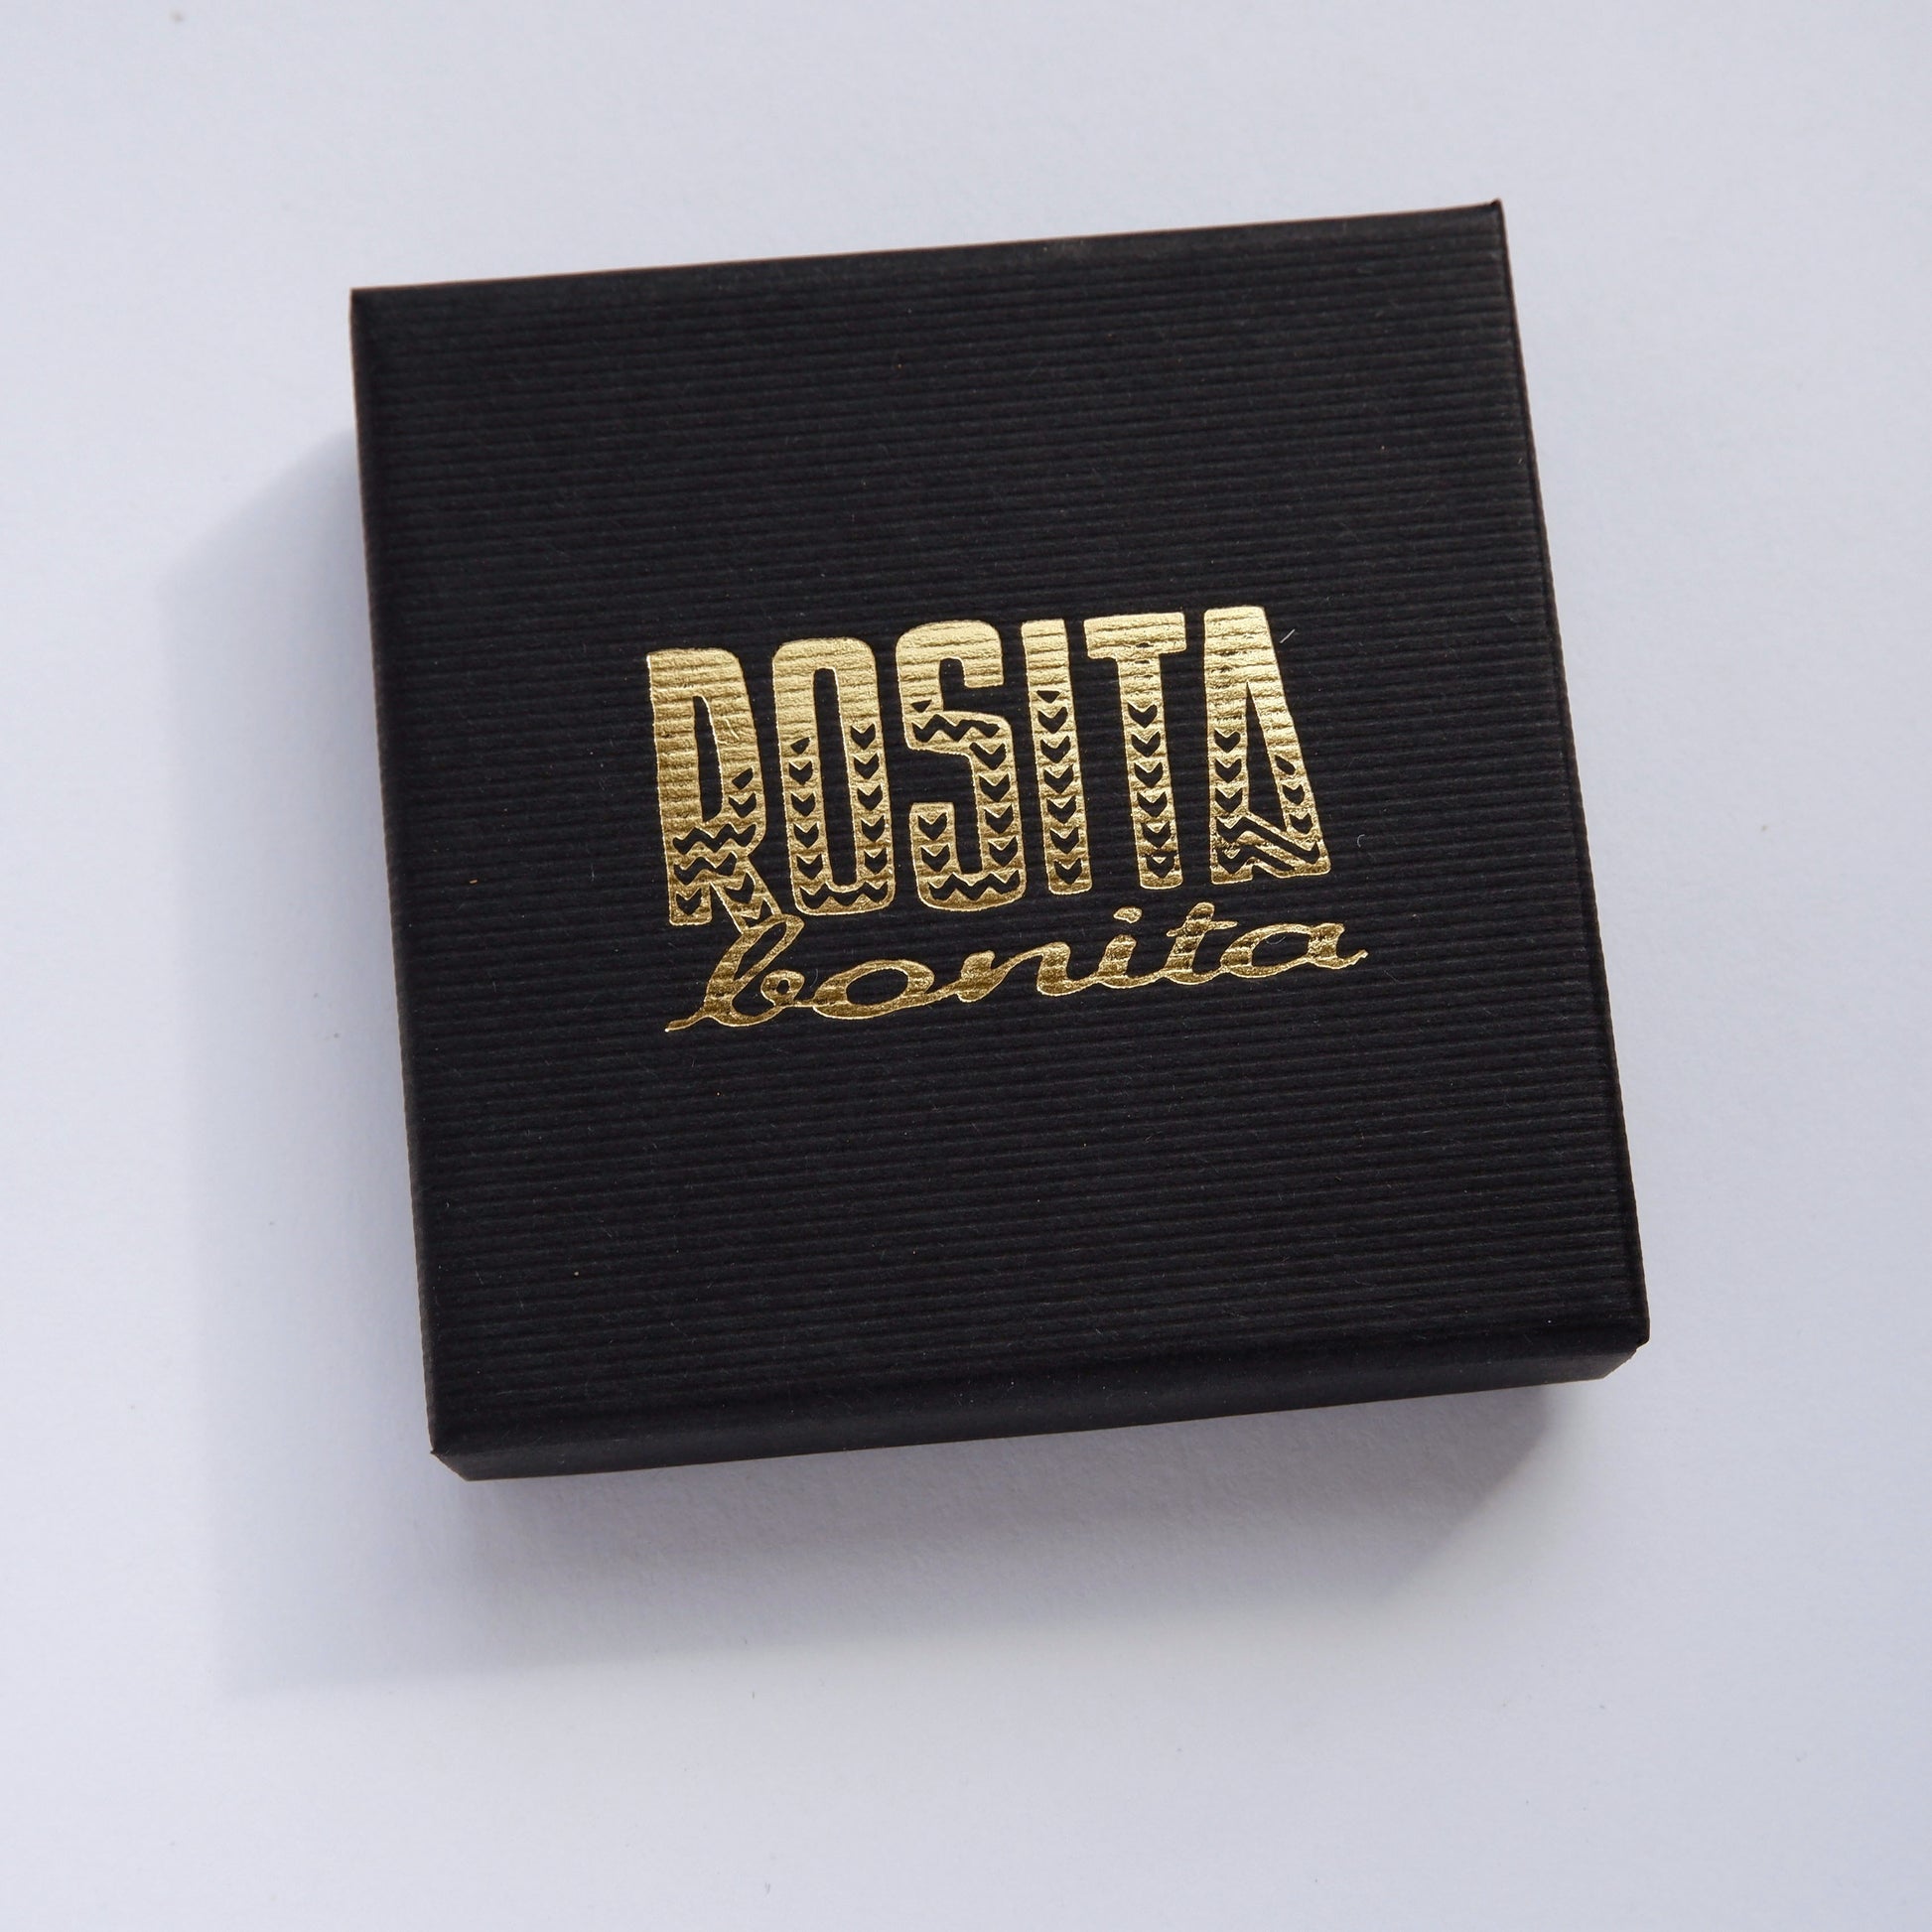 black needlestripe cardboatd box with Rosita Bonita logo in gold